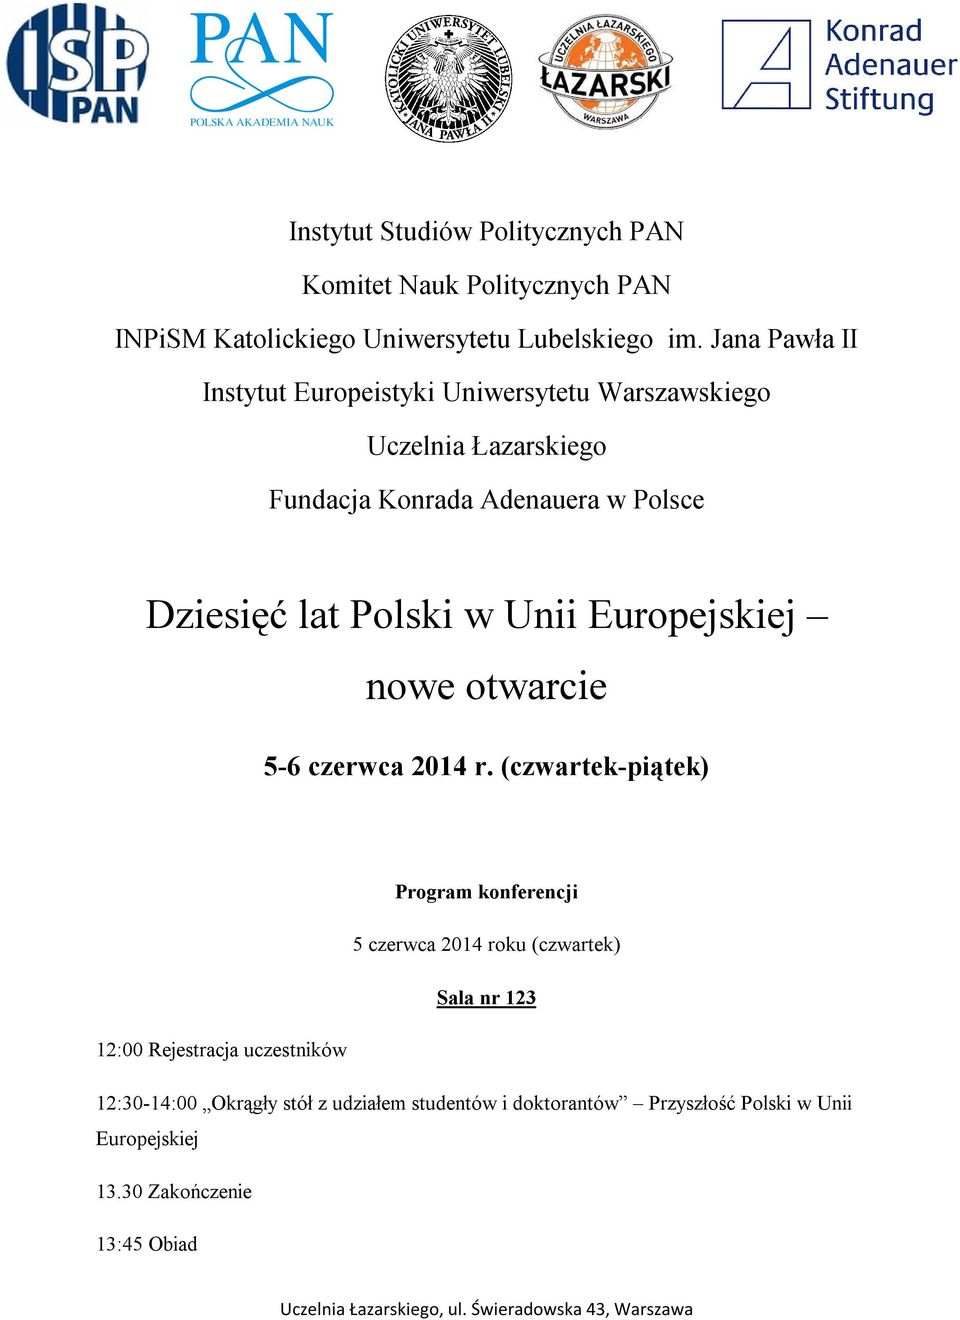 Polski w Unii Europejskiej nowe otwarcie 5-6 czerwca 2014 r.